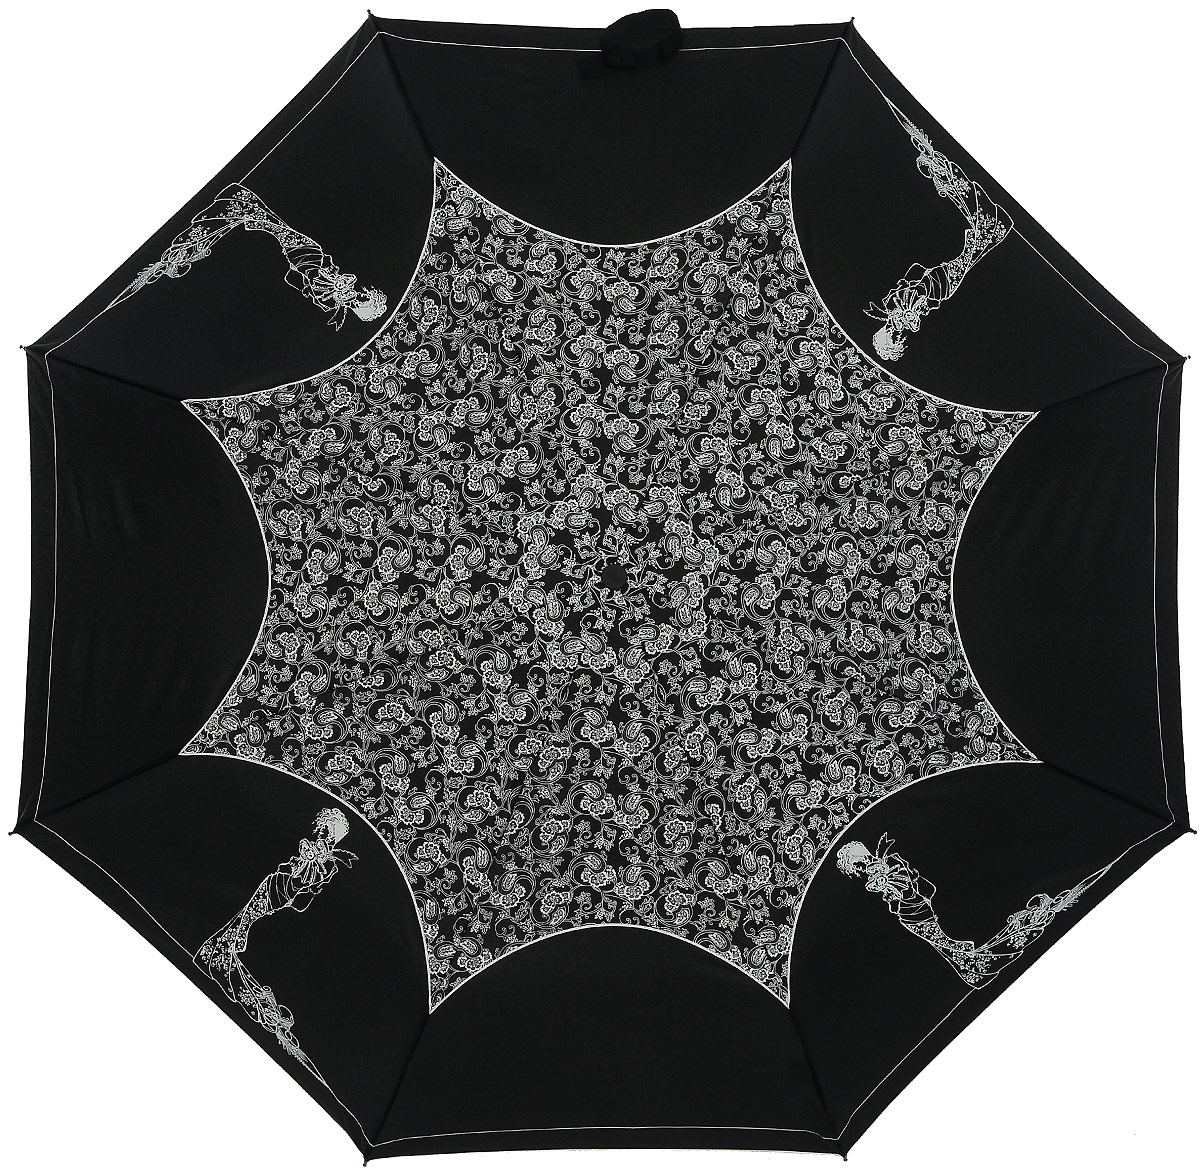 Зонт женский Zest, автомат, 3 сложения, цвет: черный, белый. 23849-9008